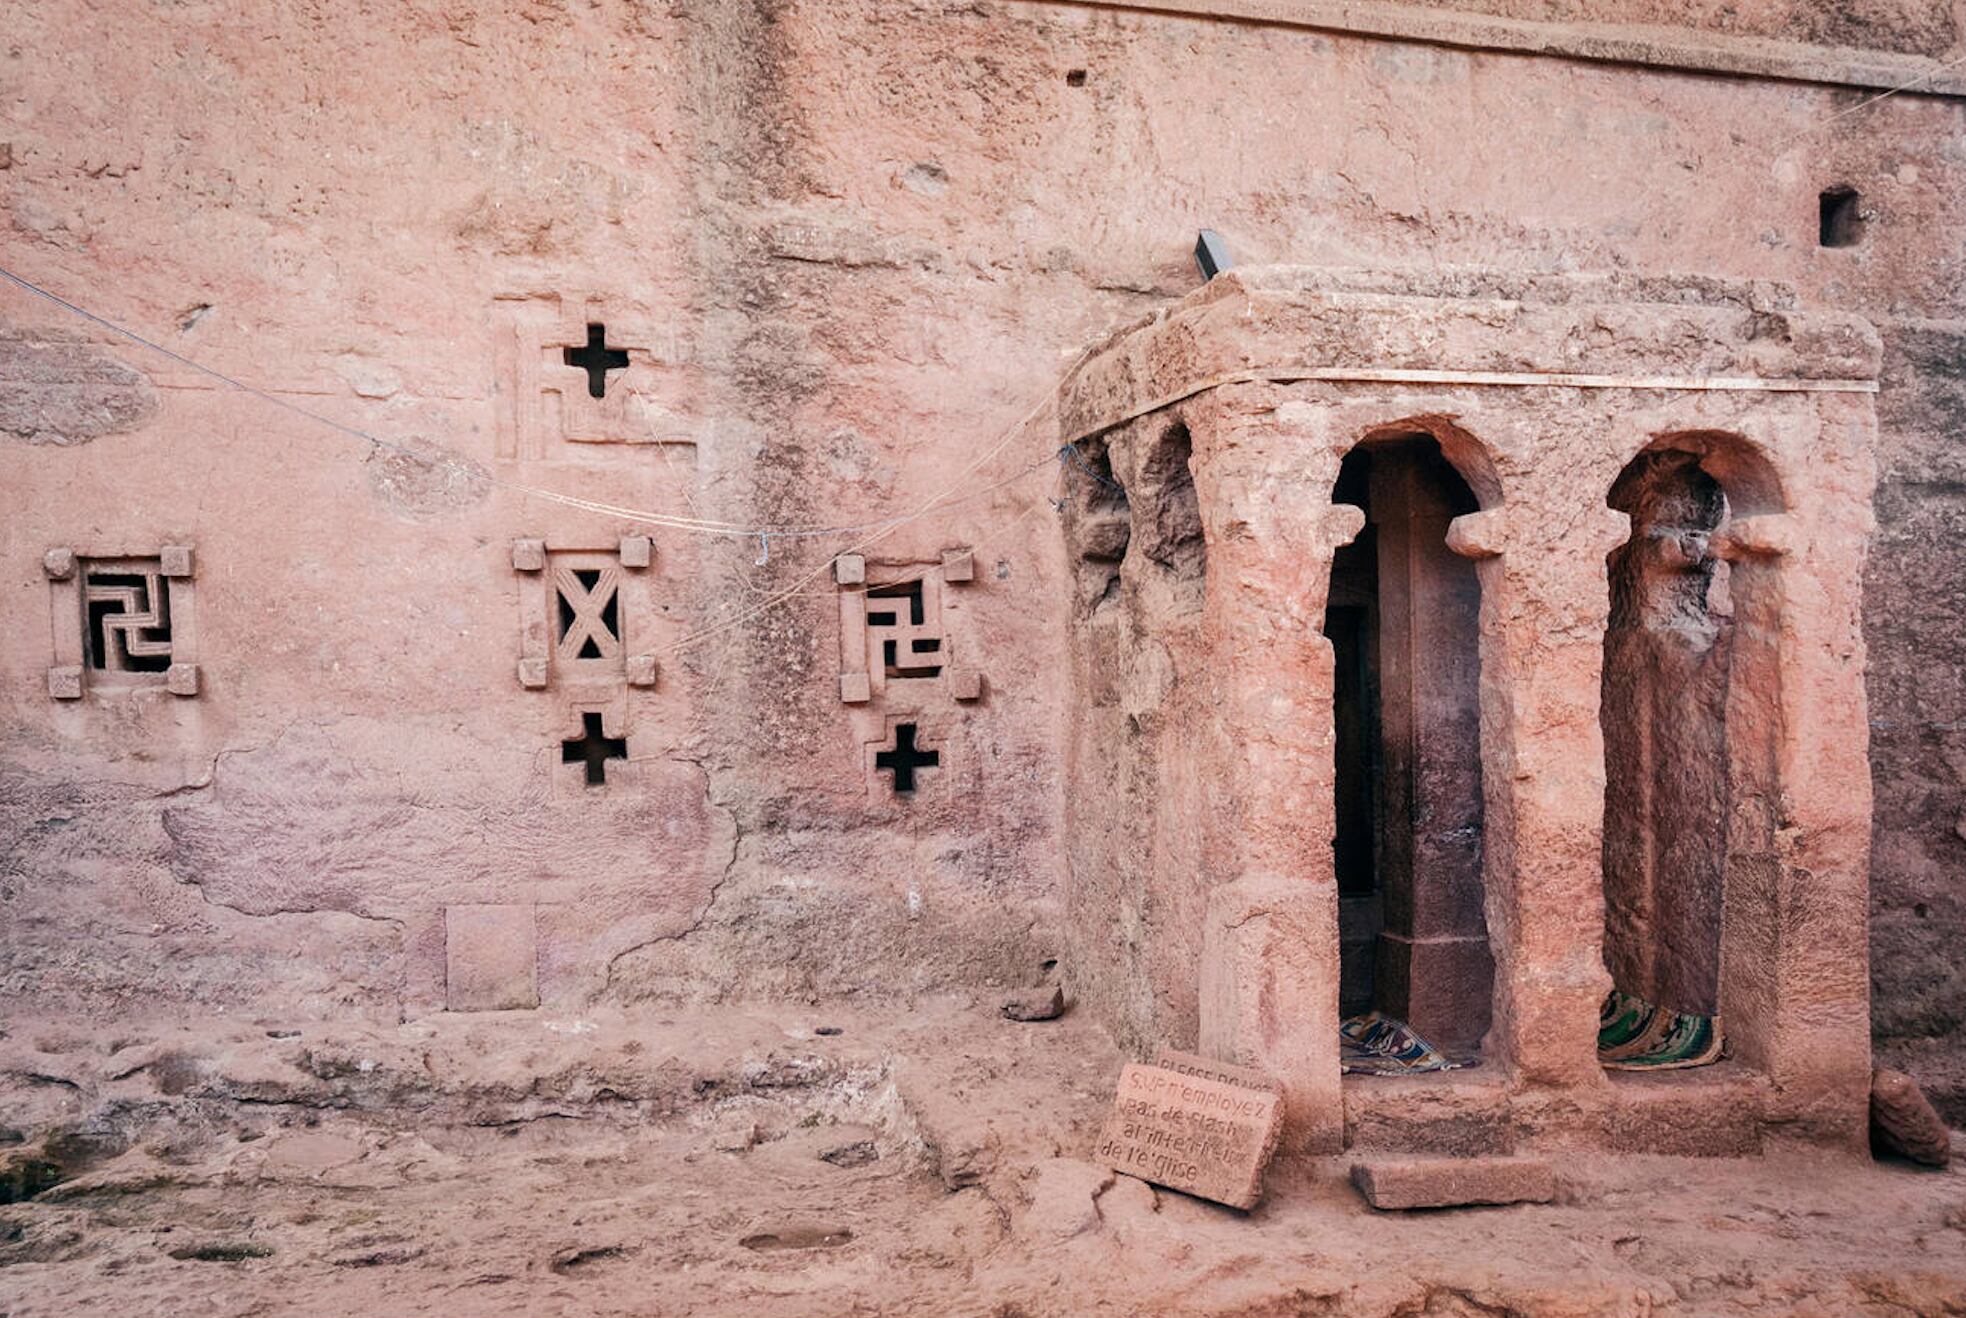 Las famosas iglesias cristianas ortodoxas excavadas en la roca de Lalibela.